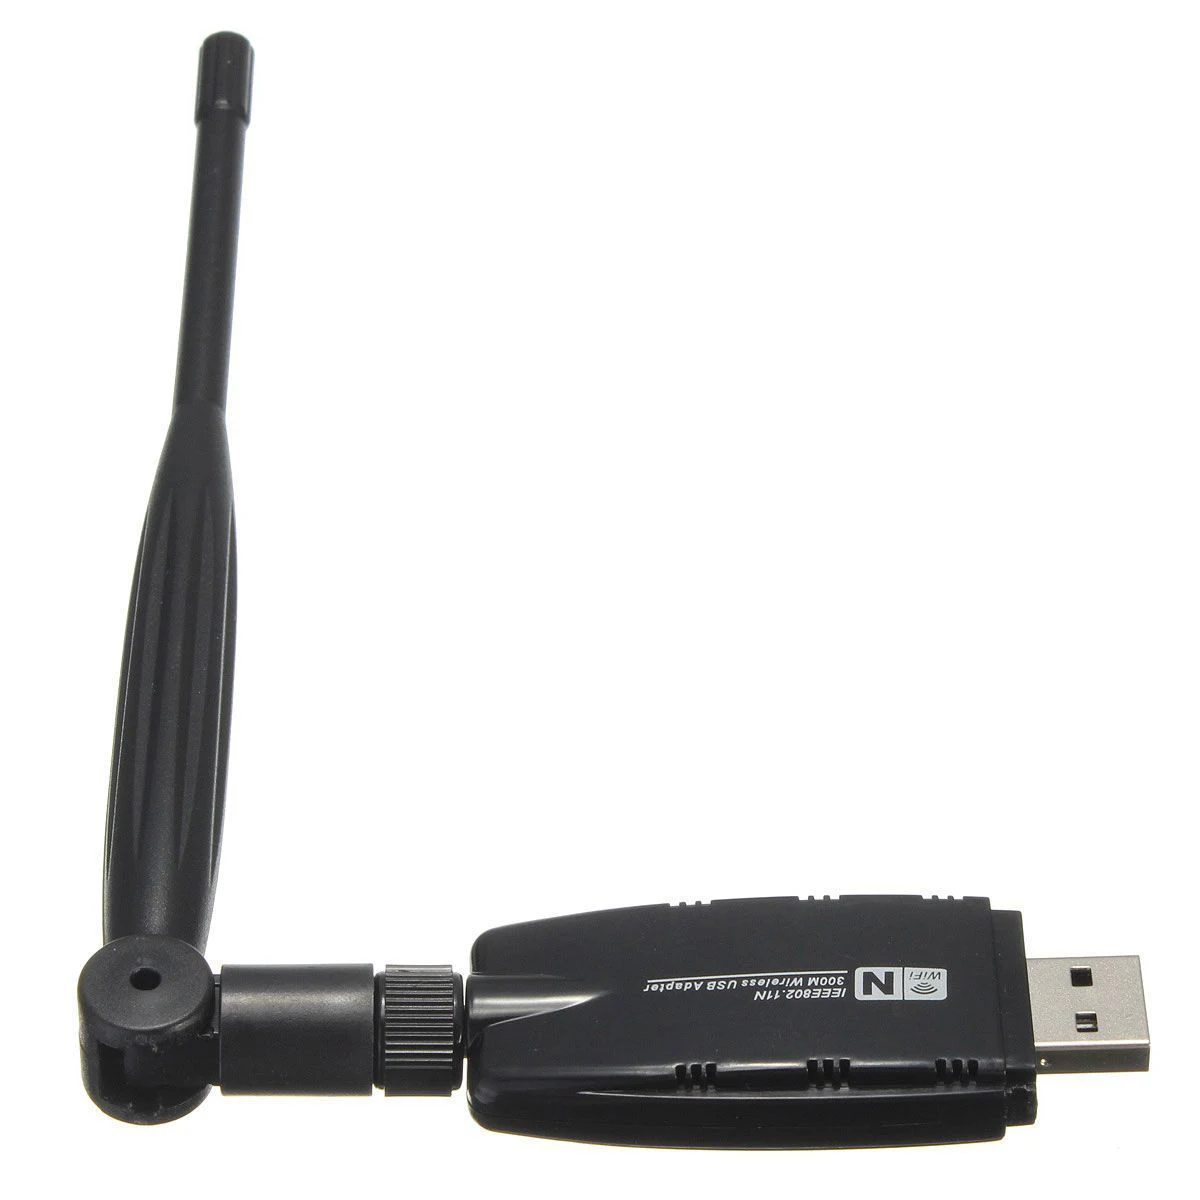 W/Телевизионные антенны 300 Мбит Мини Беспроводной USB Wi-Fi адаптер сети lan карты 802.11n/g/b